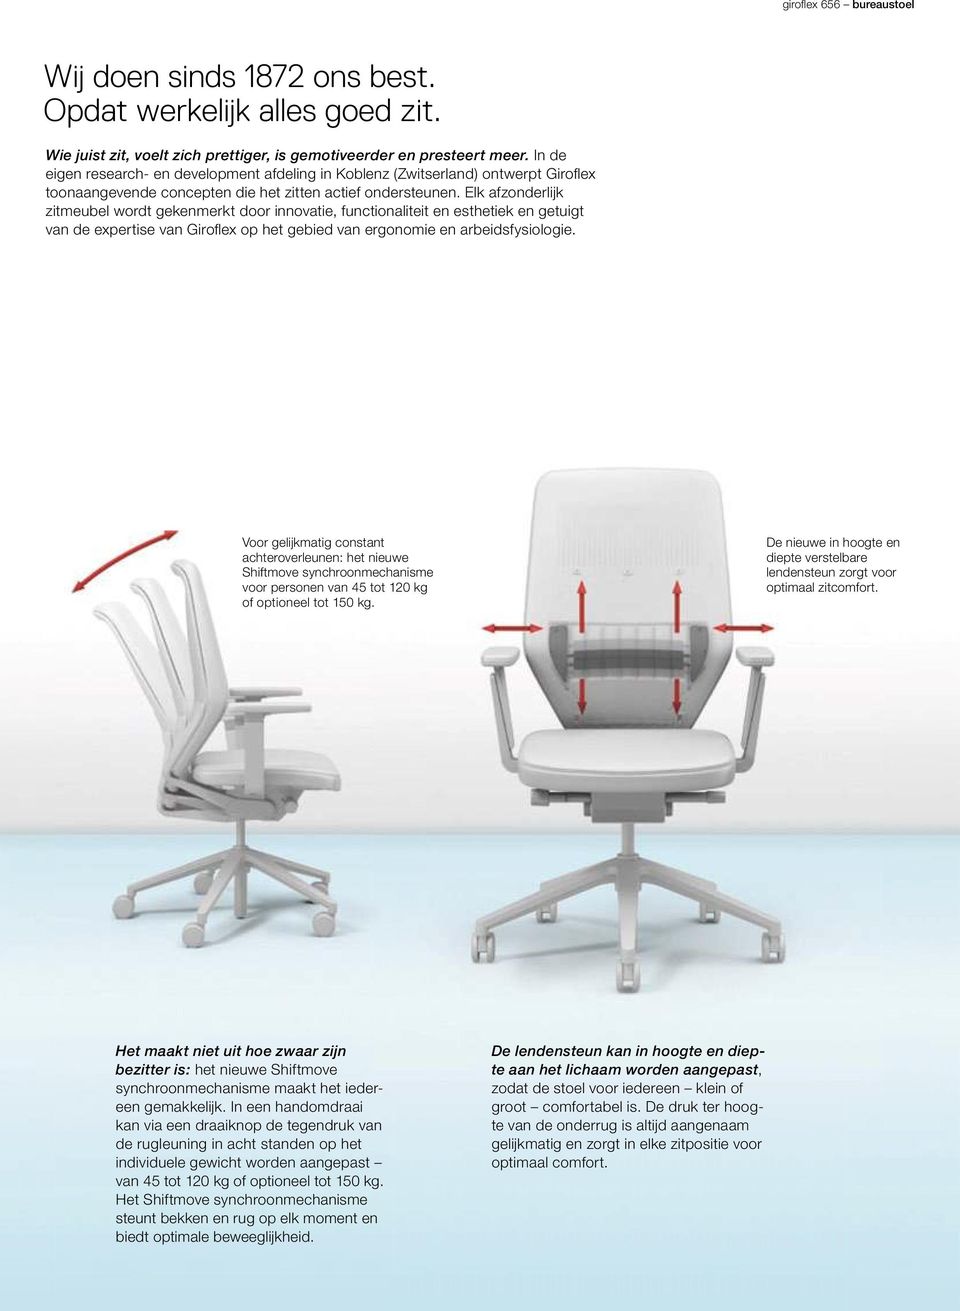 Elk afzonderlijk zitmeubel wordt gekenmerkt door innovatie, functionaliteit en esthetiek en getuigt van de expertise van Giroflex op het gebied van ergonomie en arbeidsfysiologie.